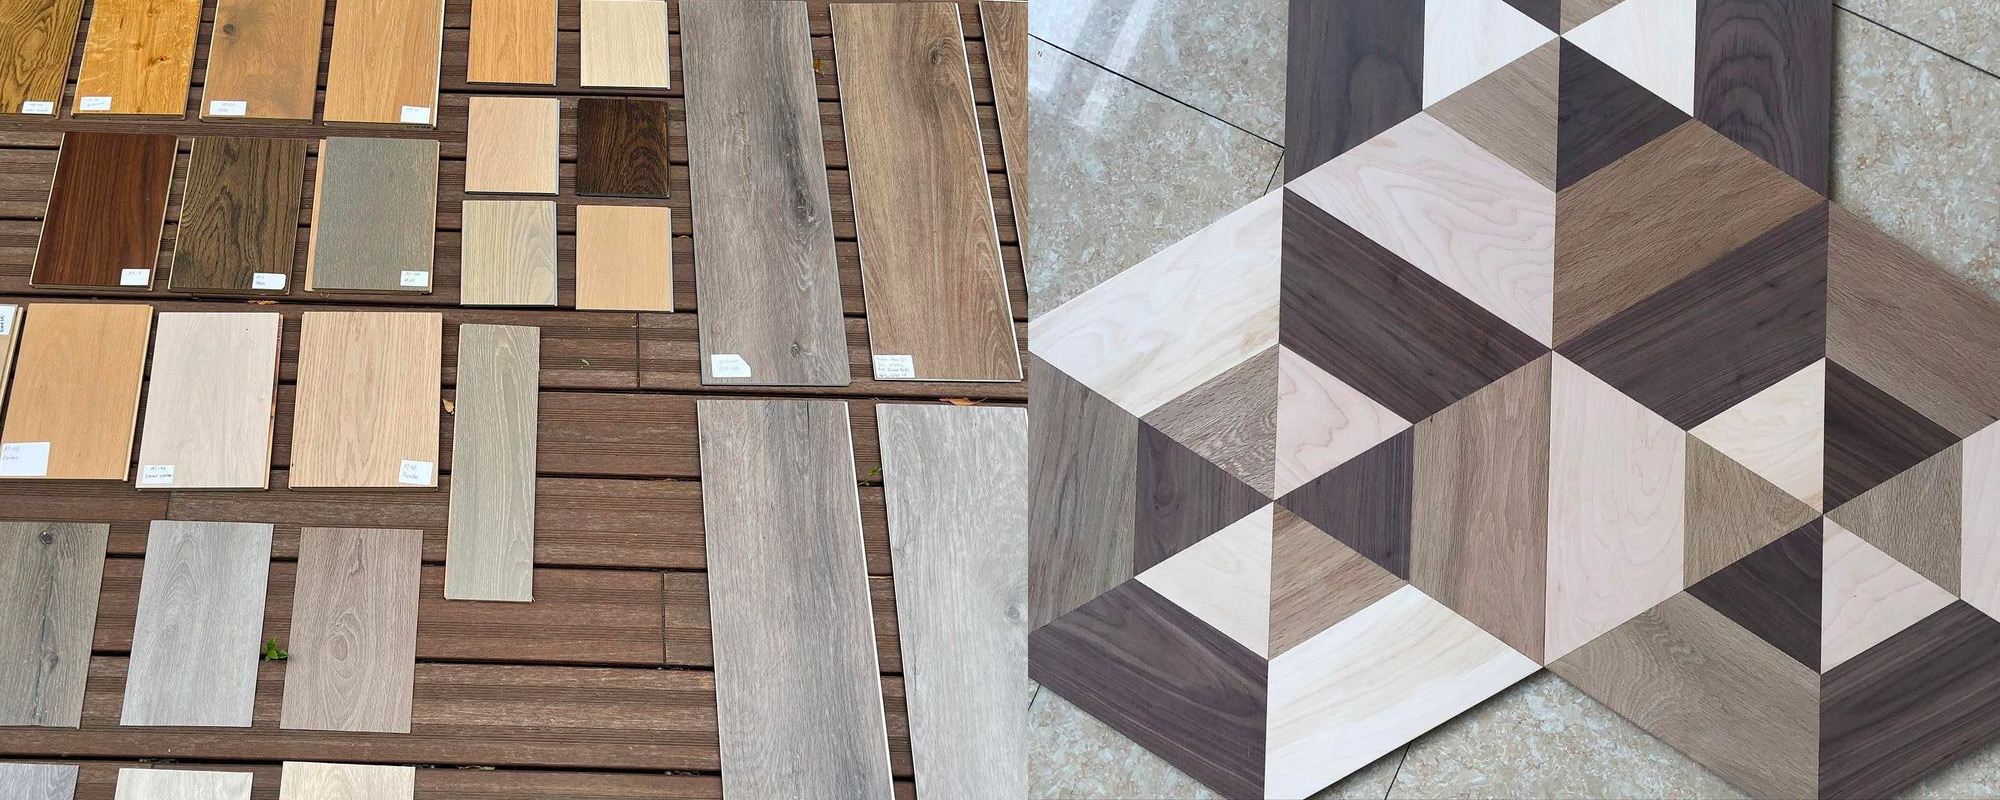 散らばった寄木細工の床を製造する14のステップ